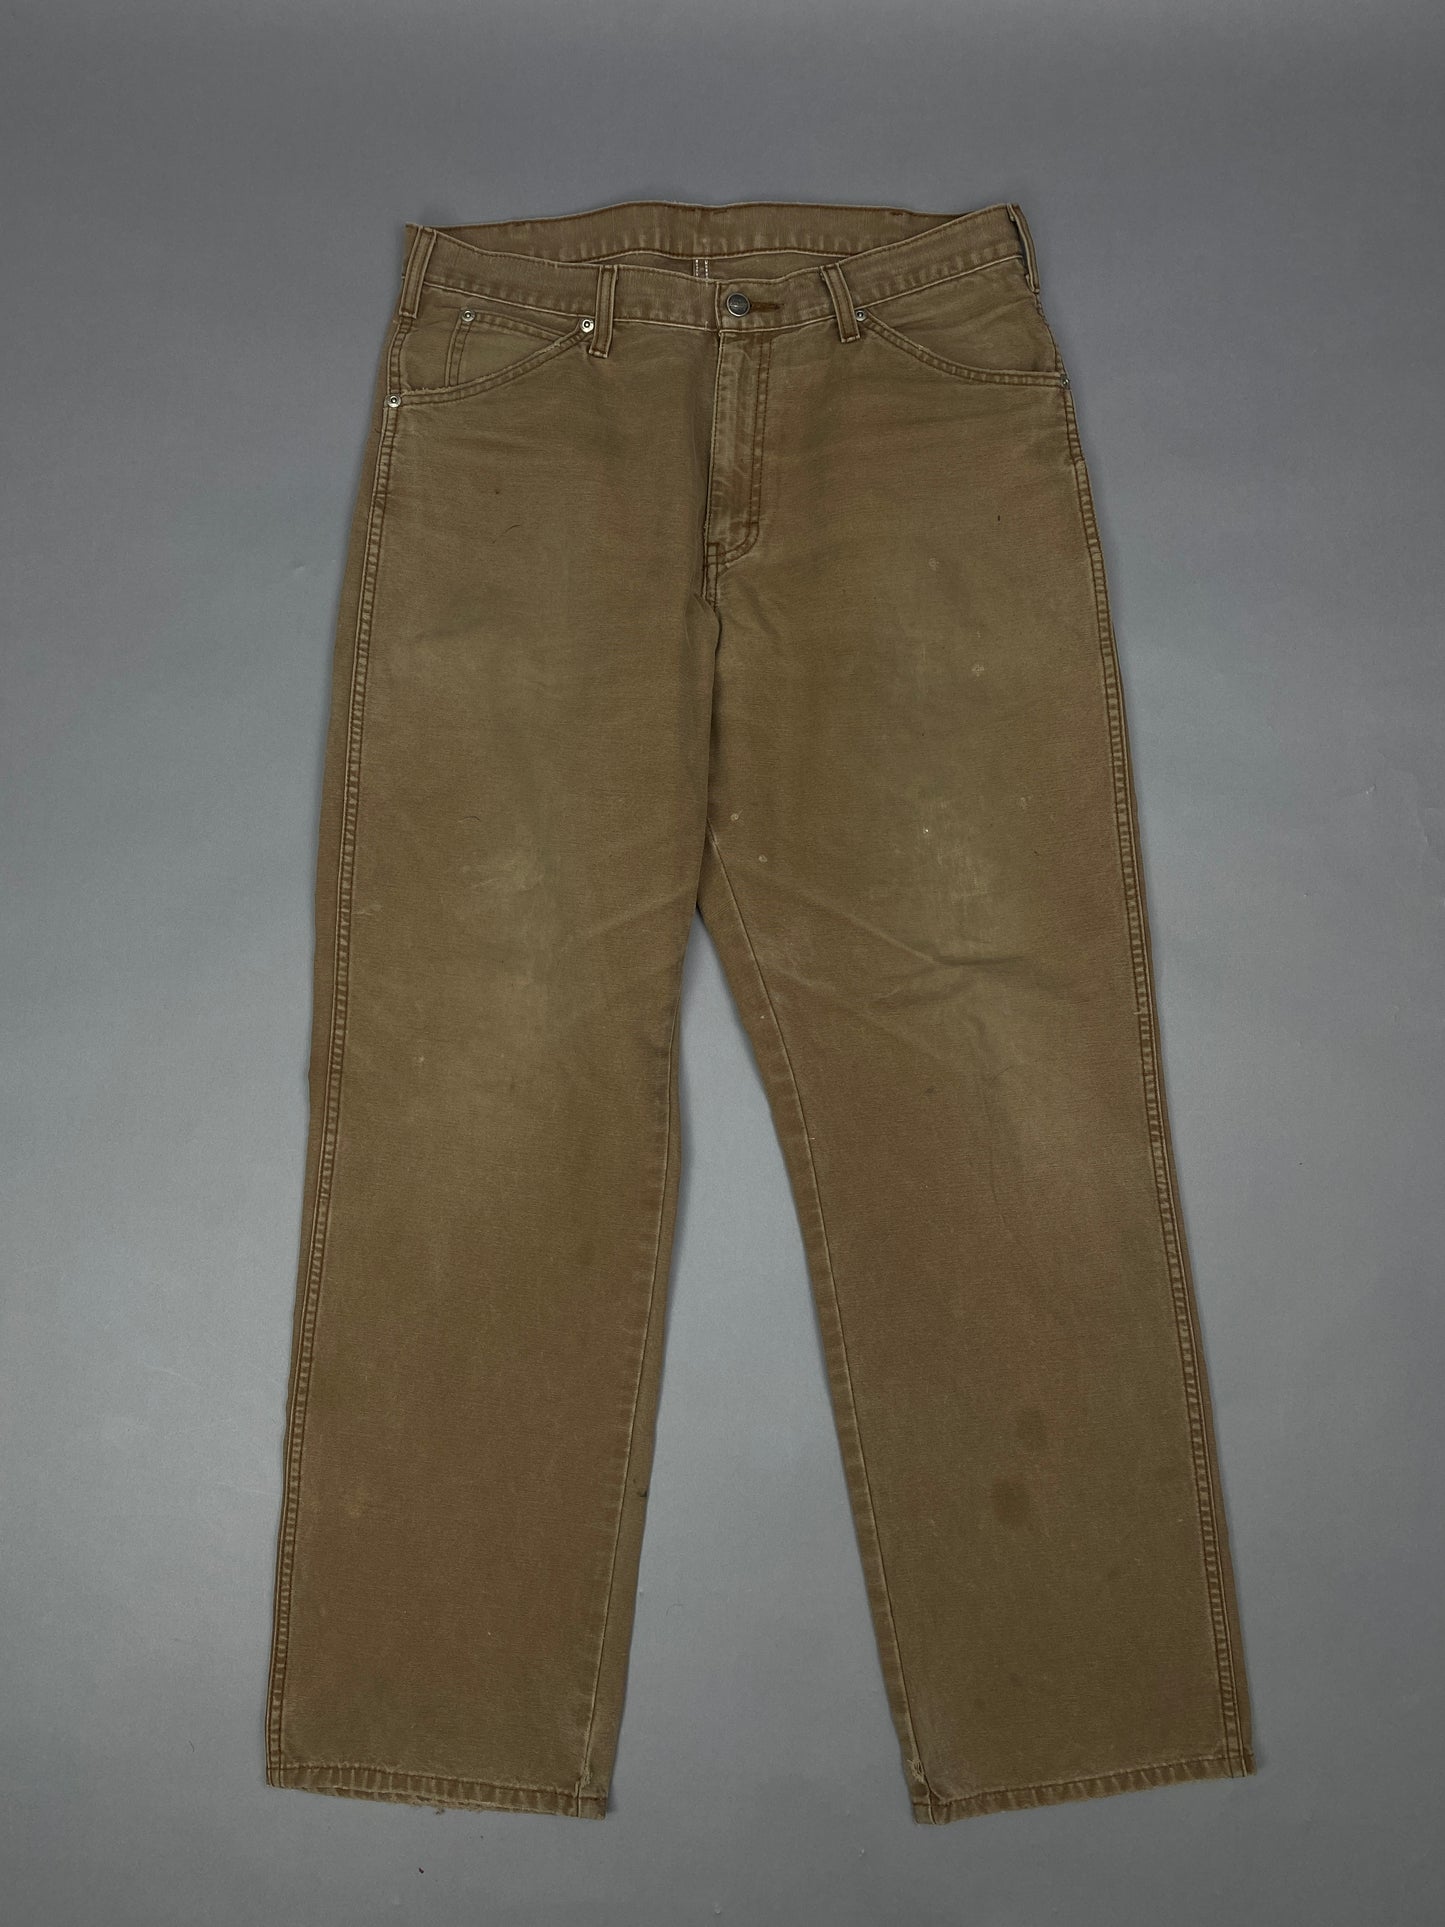 Dickies Vintage Carpenter Jeans - 34x32